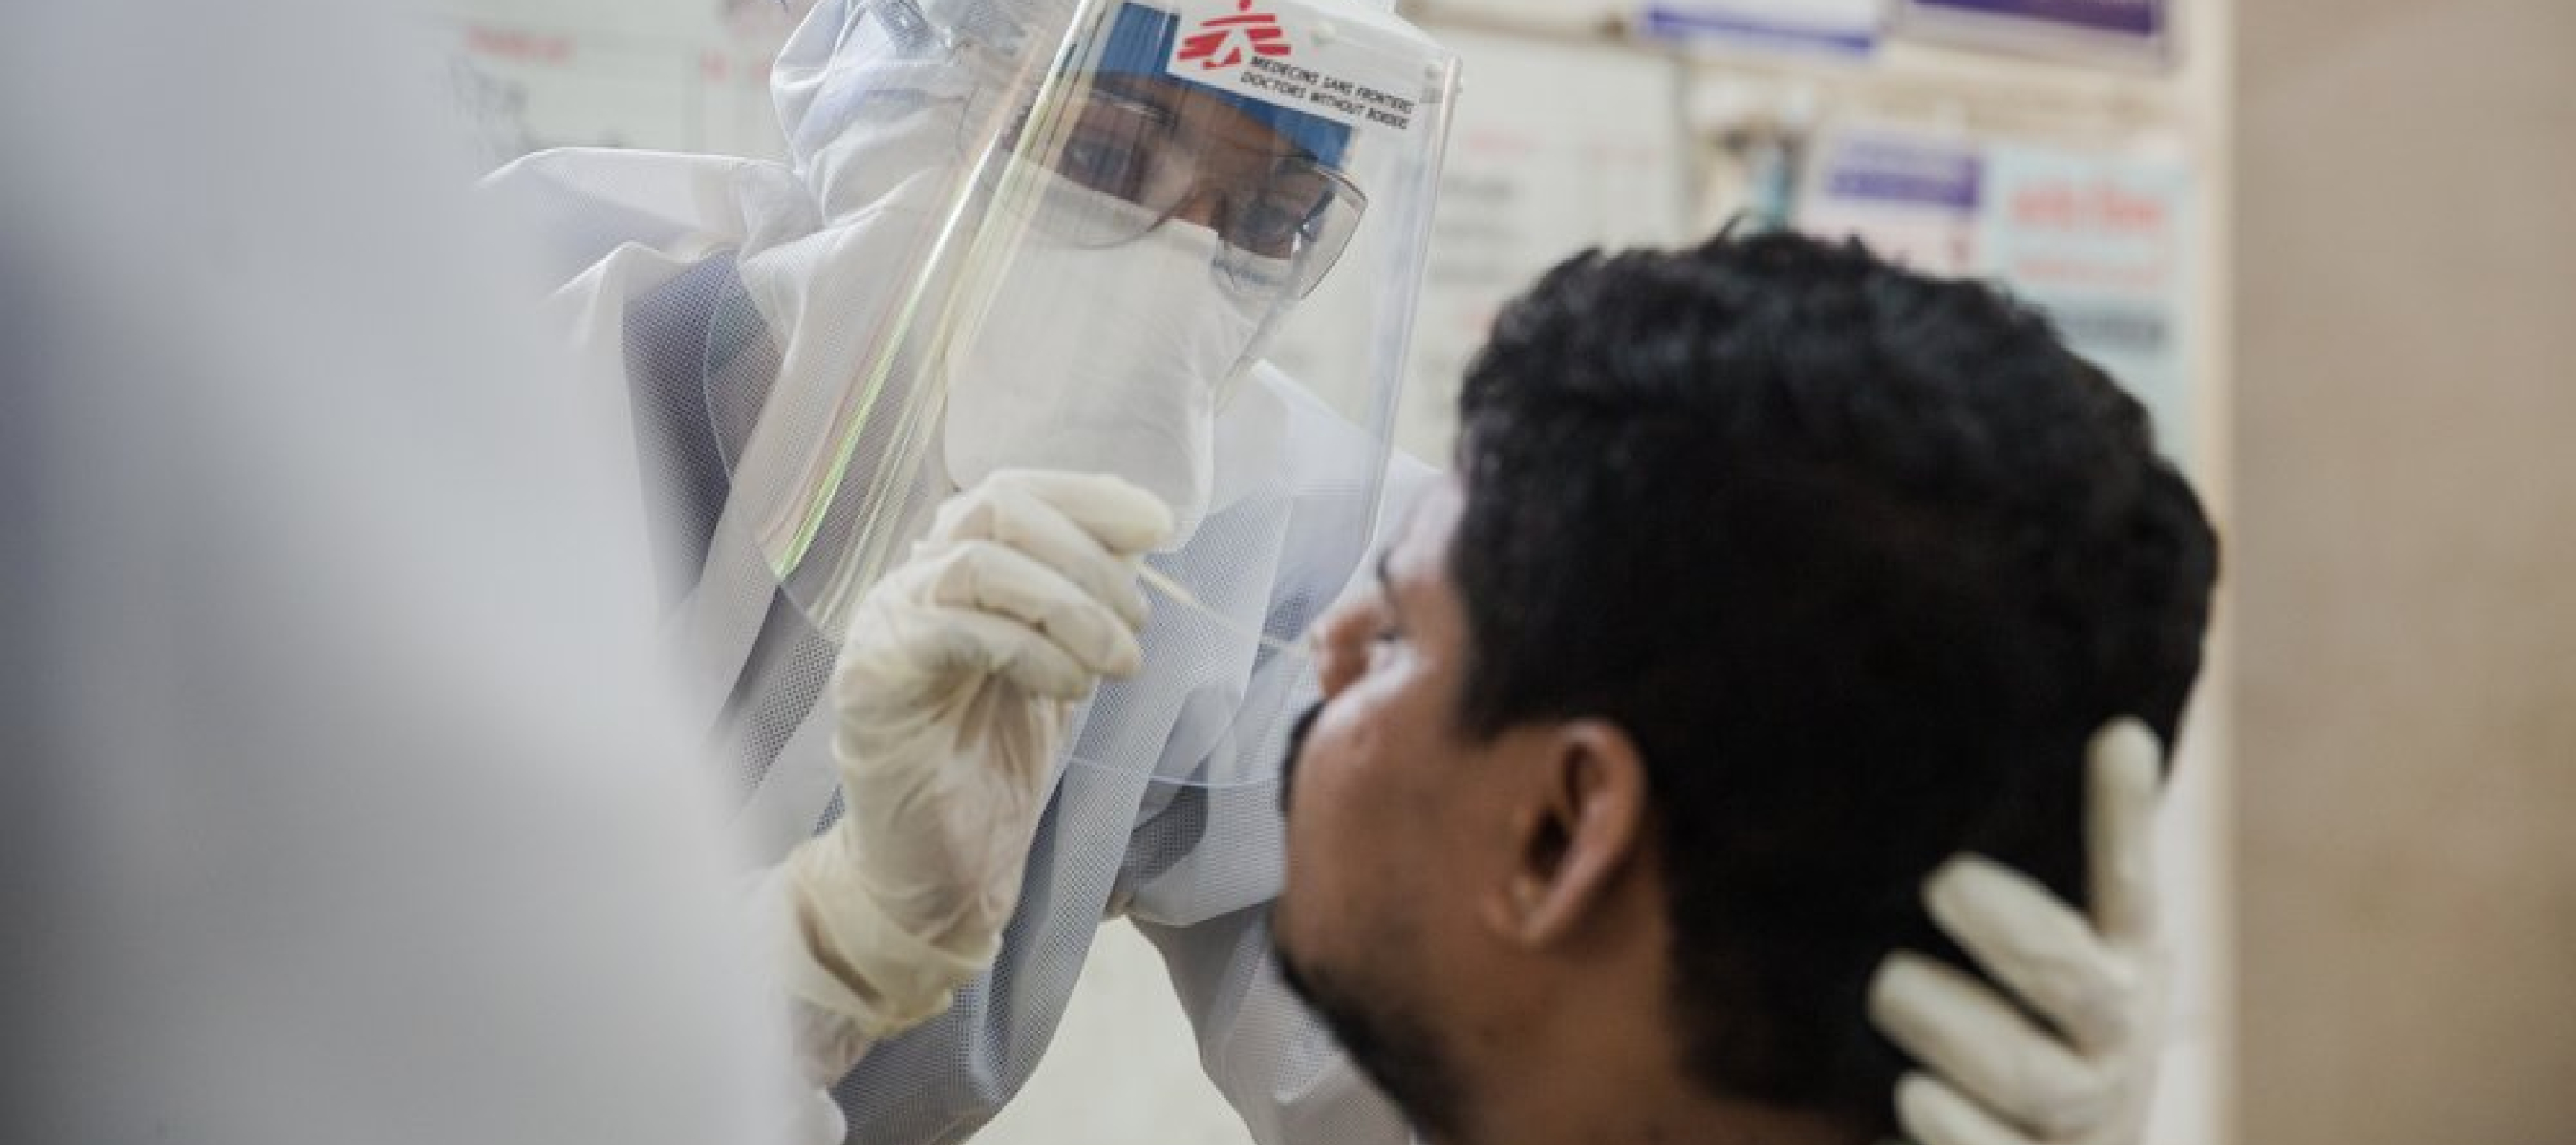 Eine Mitarbeiterin von Ärzte ohne Grenzen testet einen Patienten auf das Coronavirus